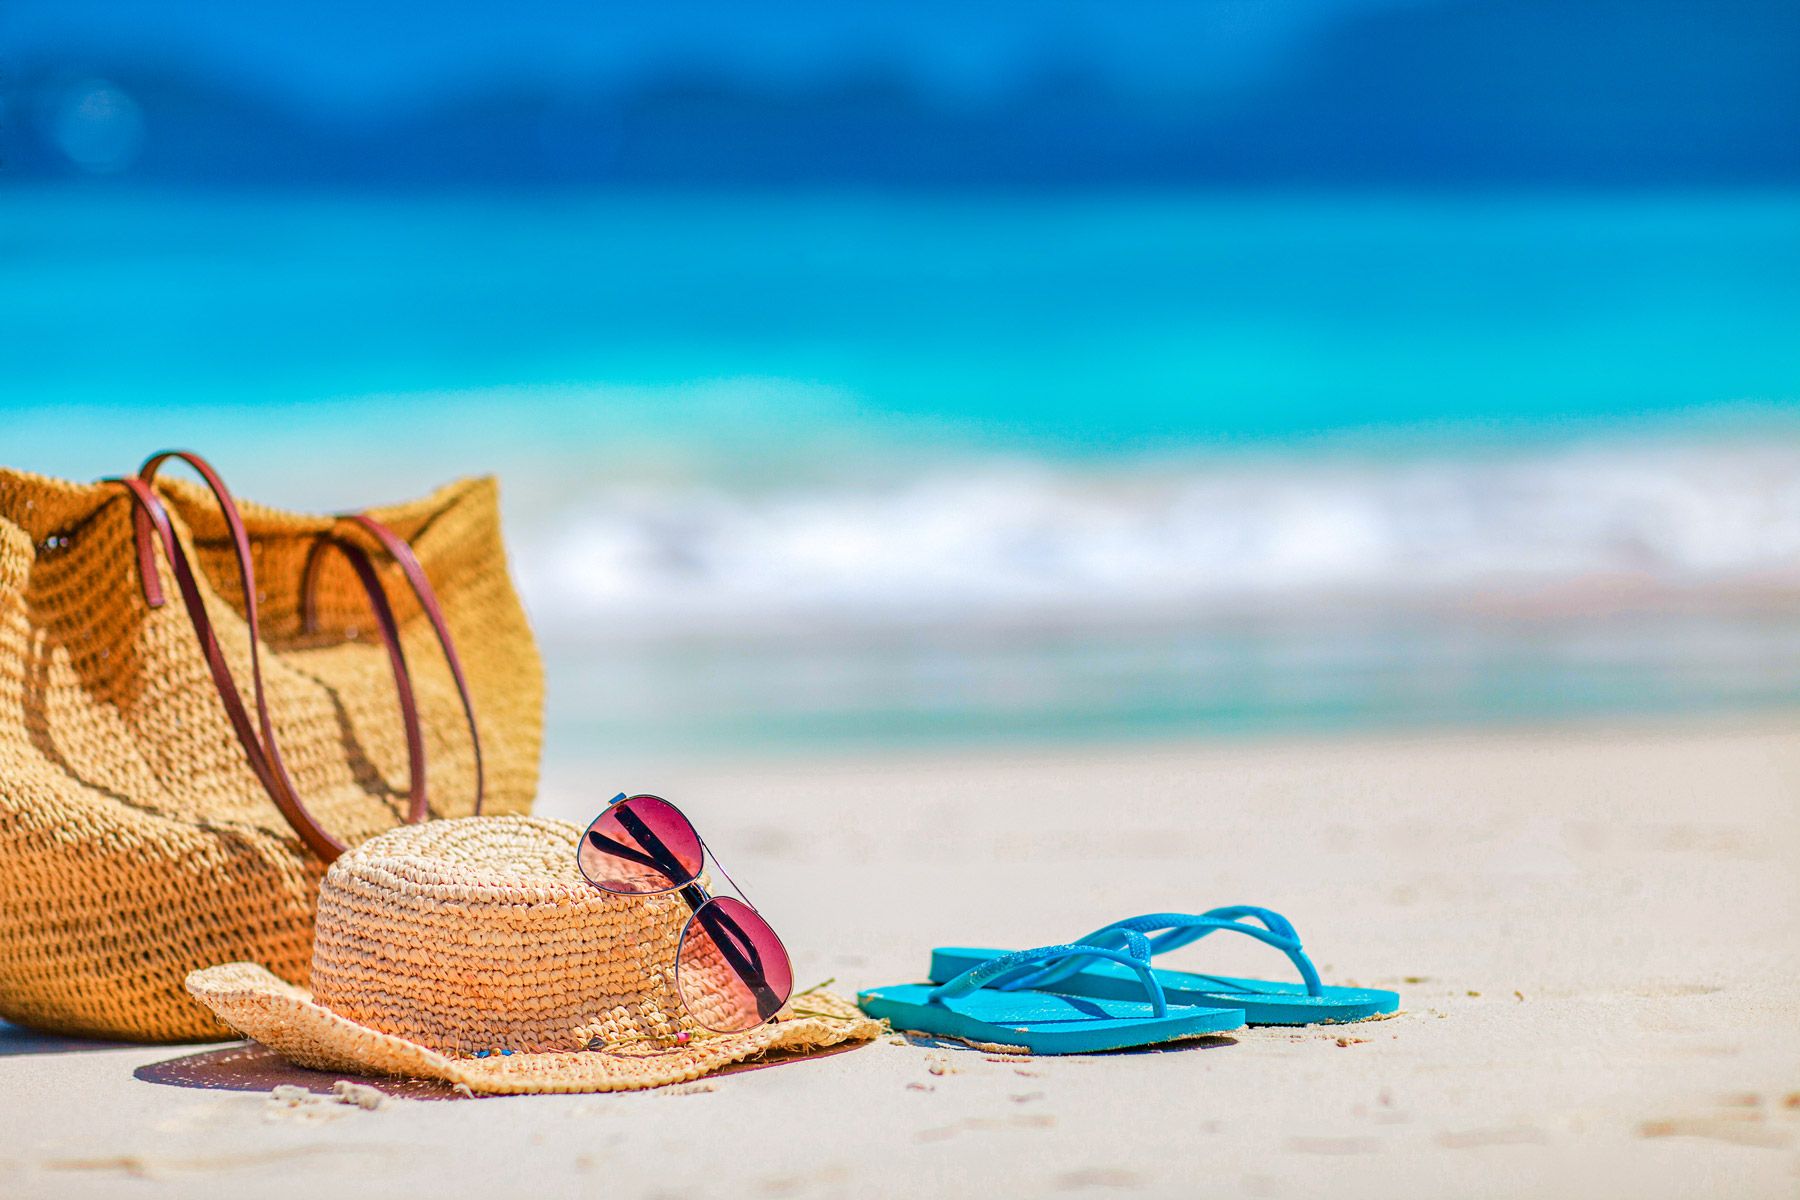 straw-bag-beach-summer-essentials